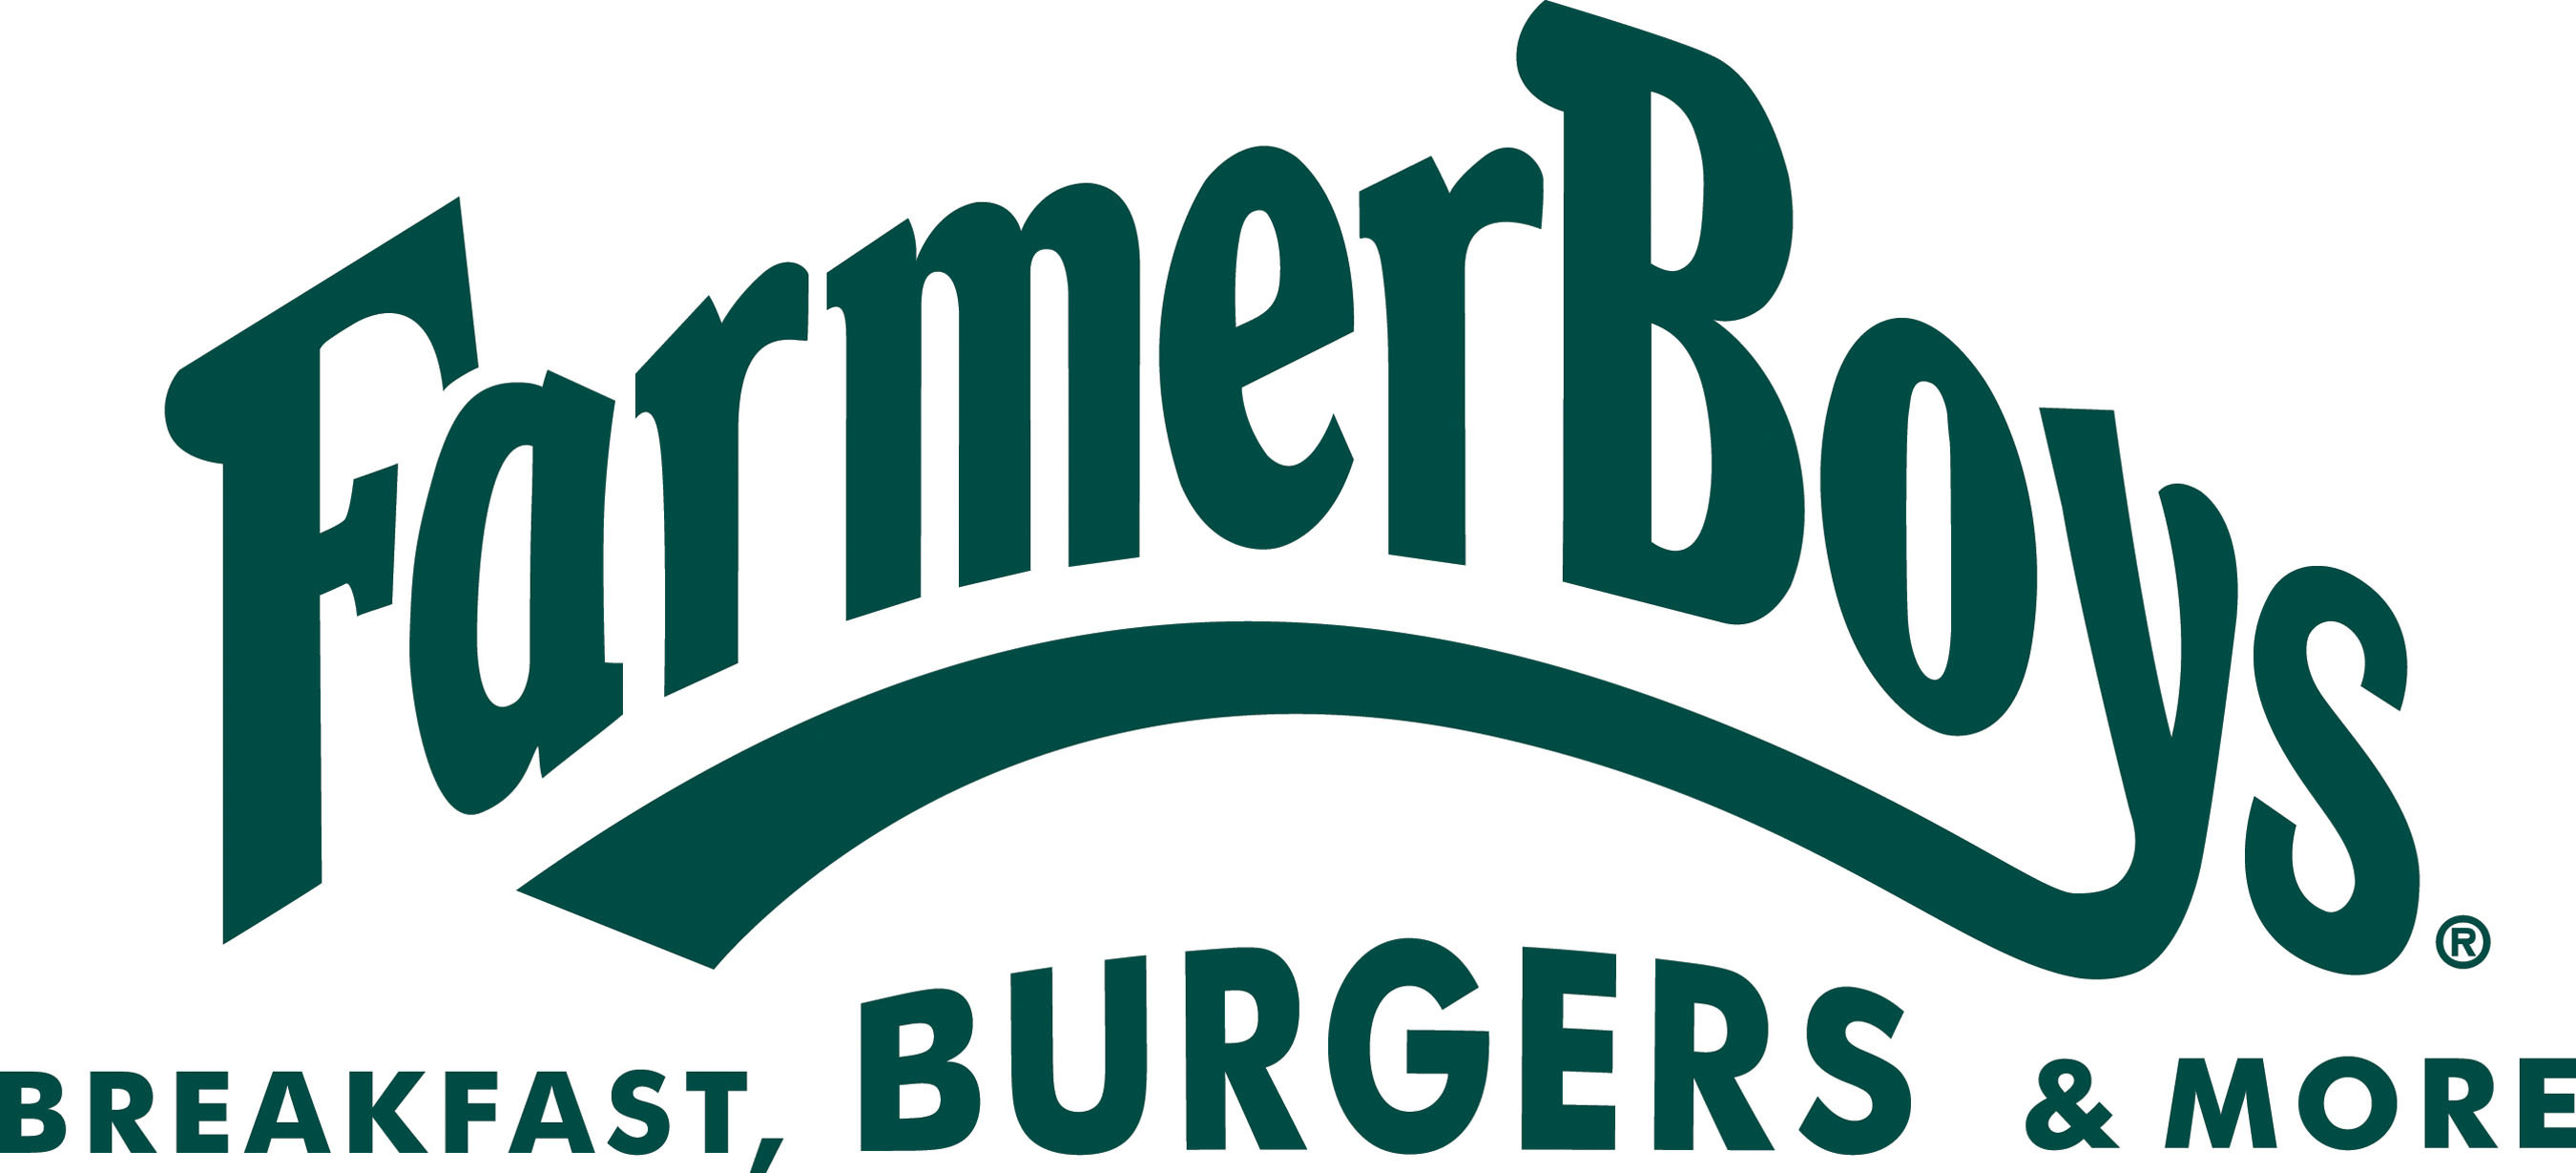 Farmer Boys Food, Inc. Logo. (PRNewsFoto/Farmer Boys Food, Inc.) (PRNewsFoto/)